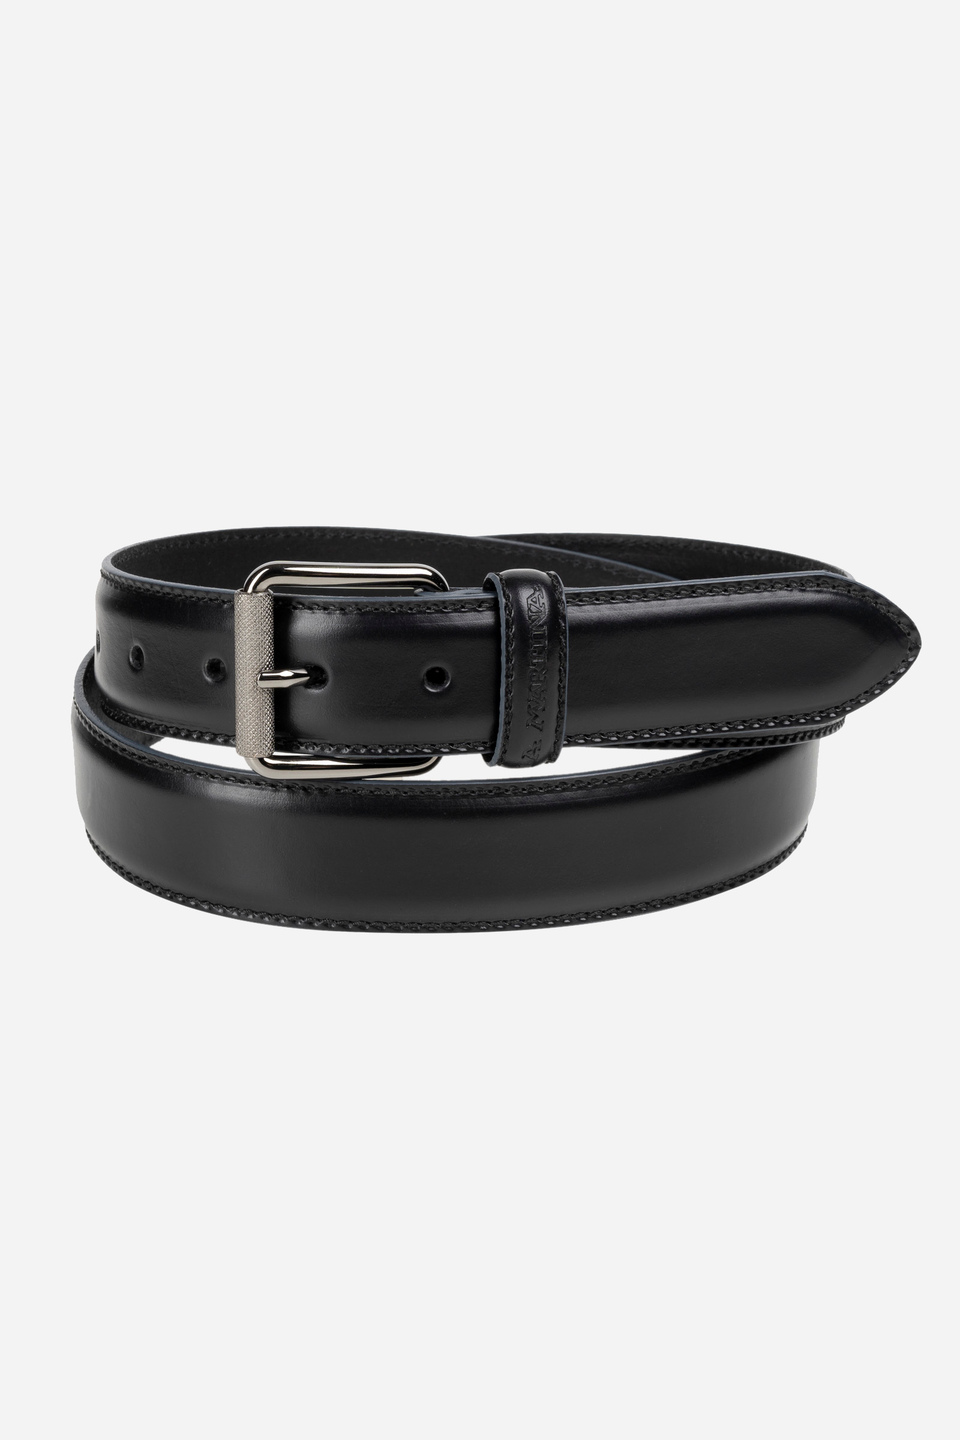 Solid color black leather belt | La Martina - Official Online Shop